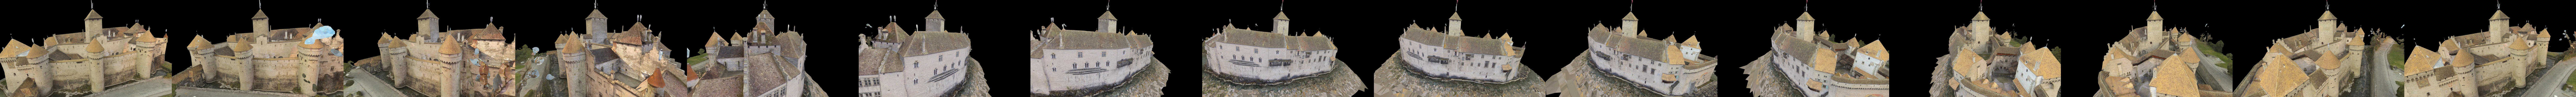 Chateau De Chillon Model Kit